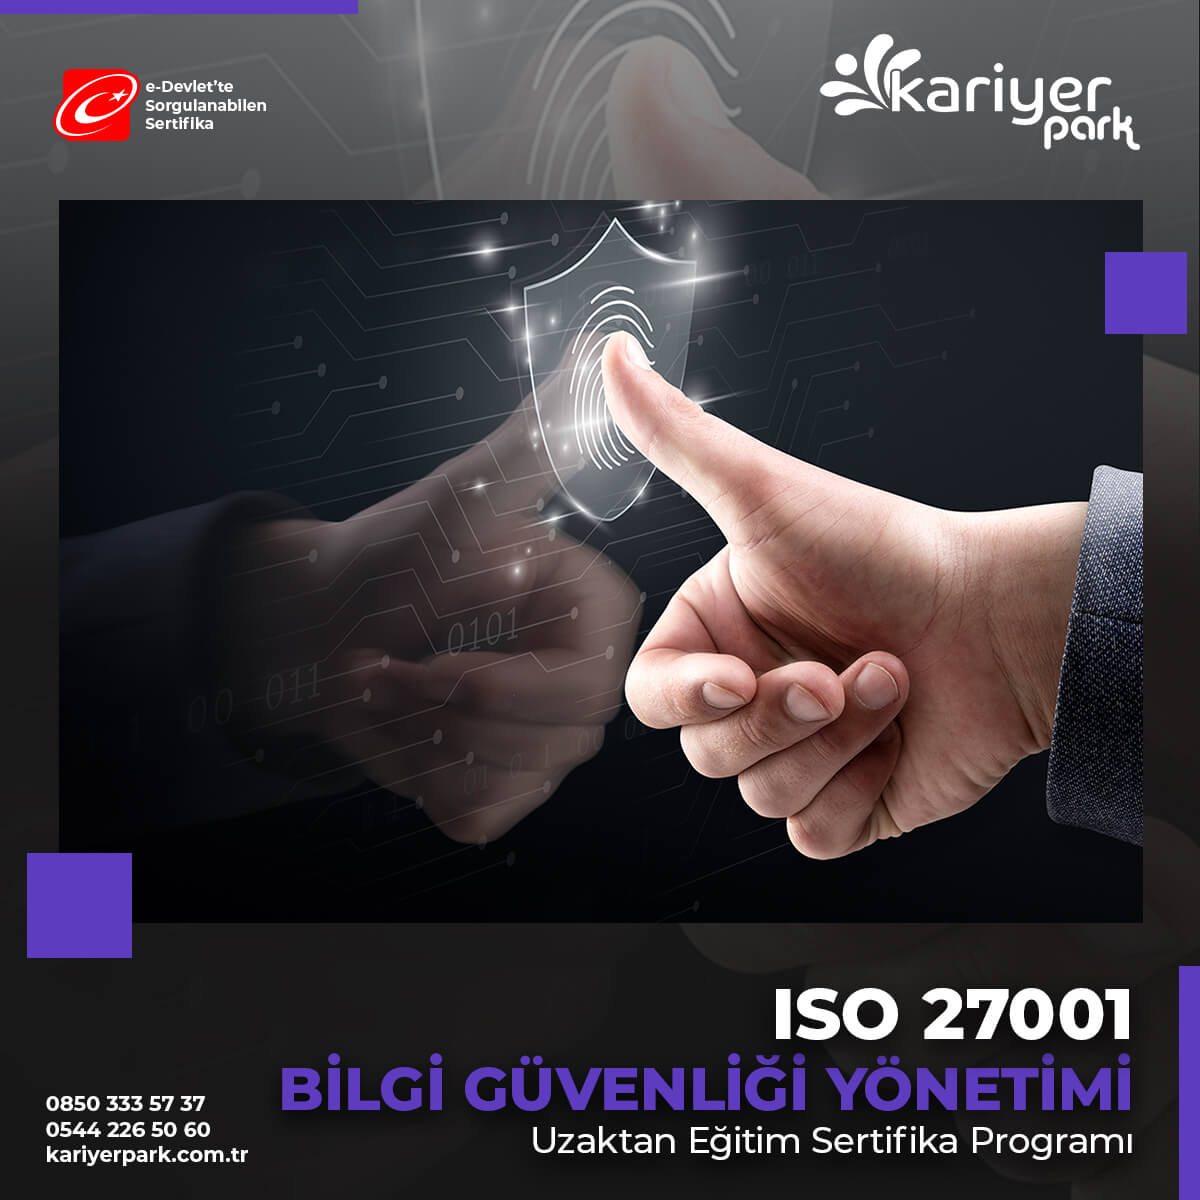 ISO 27001 Bilgi Güvenliği Yönetim Sistemi Sertifikası